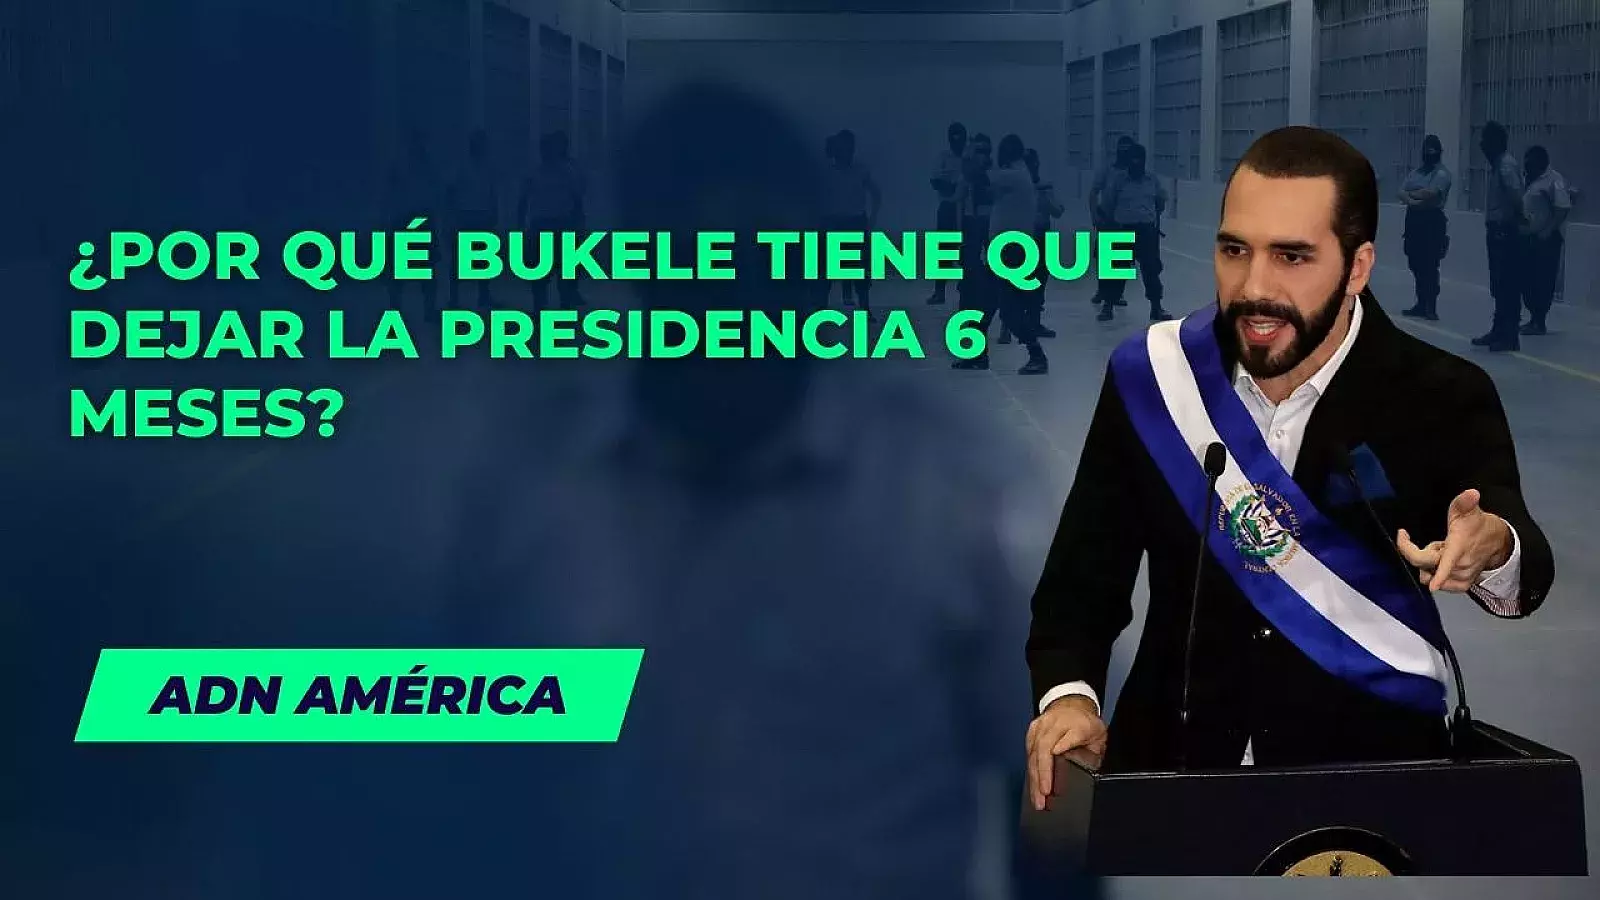 ¿Por qué Bukele tiene que dejar la presidencia de El Salvador durante 6 meses?